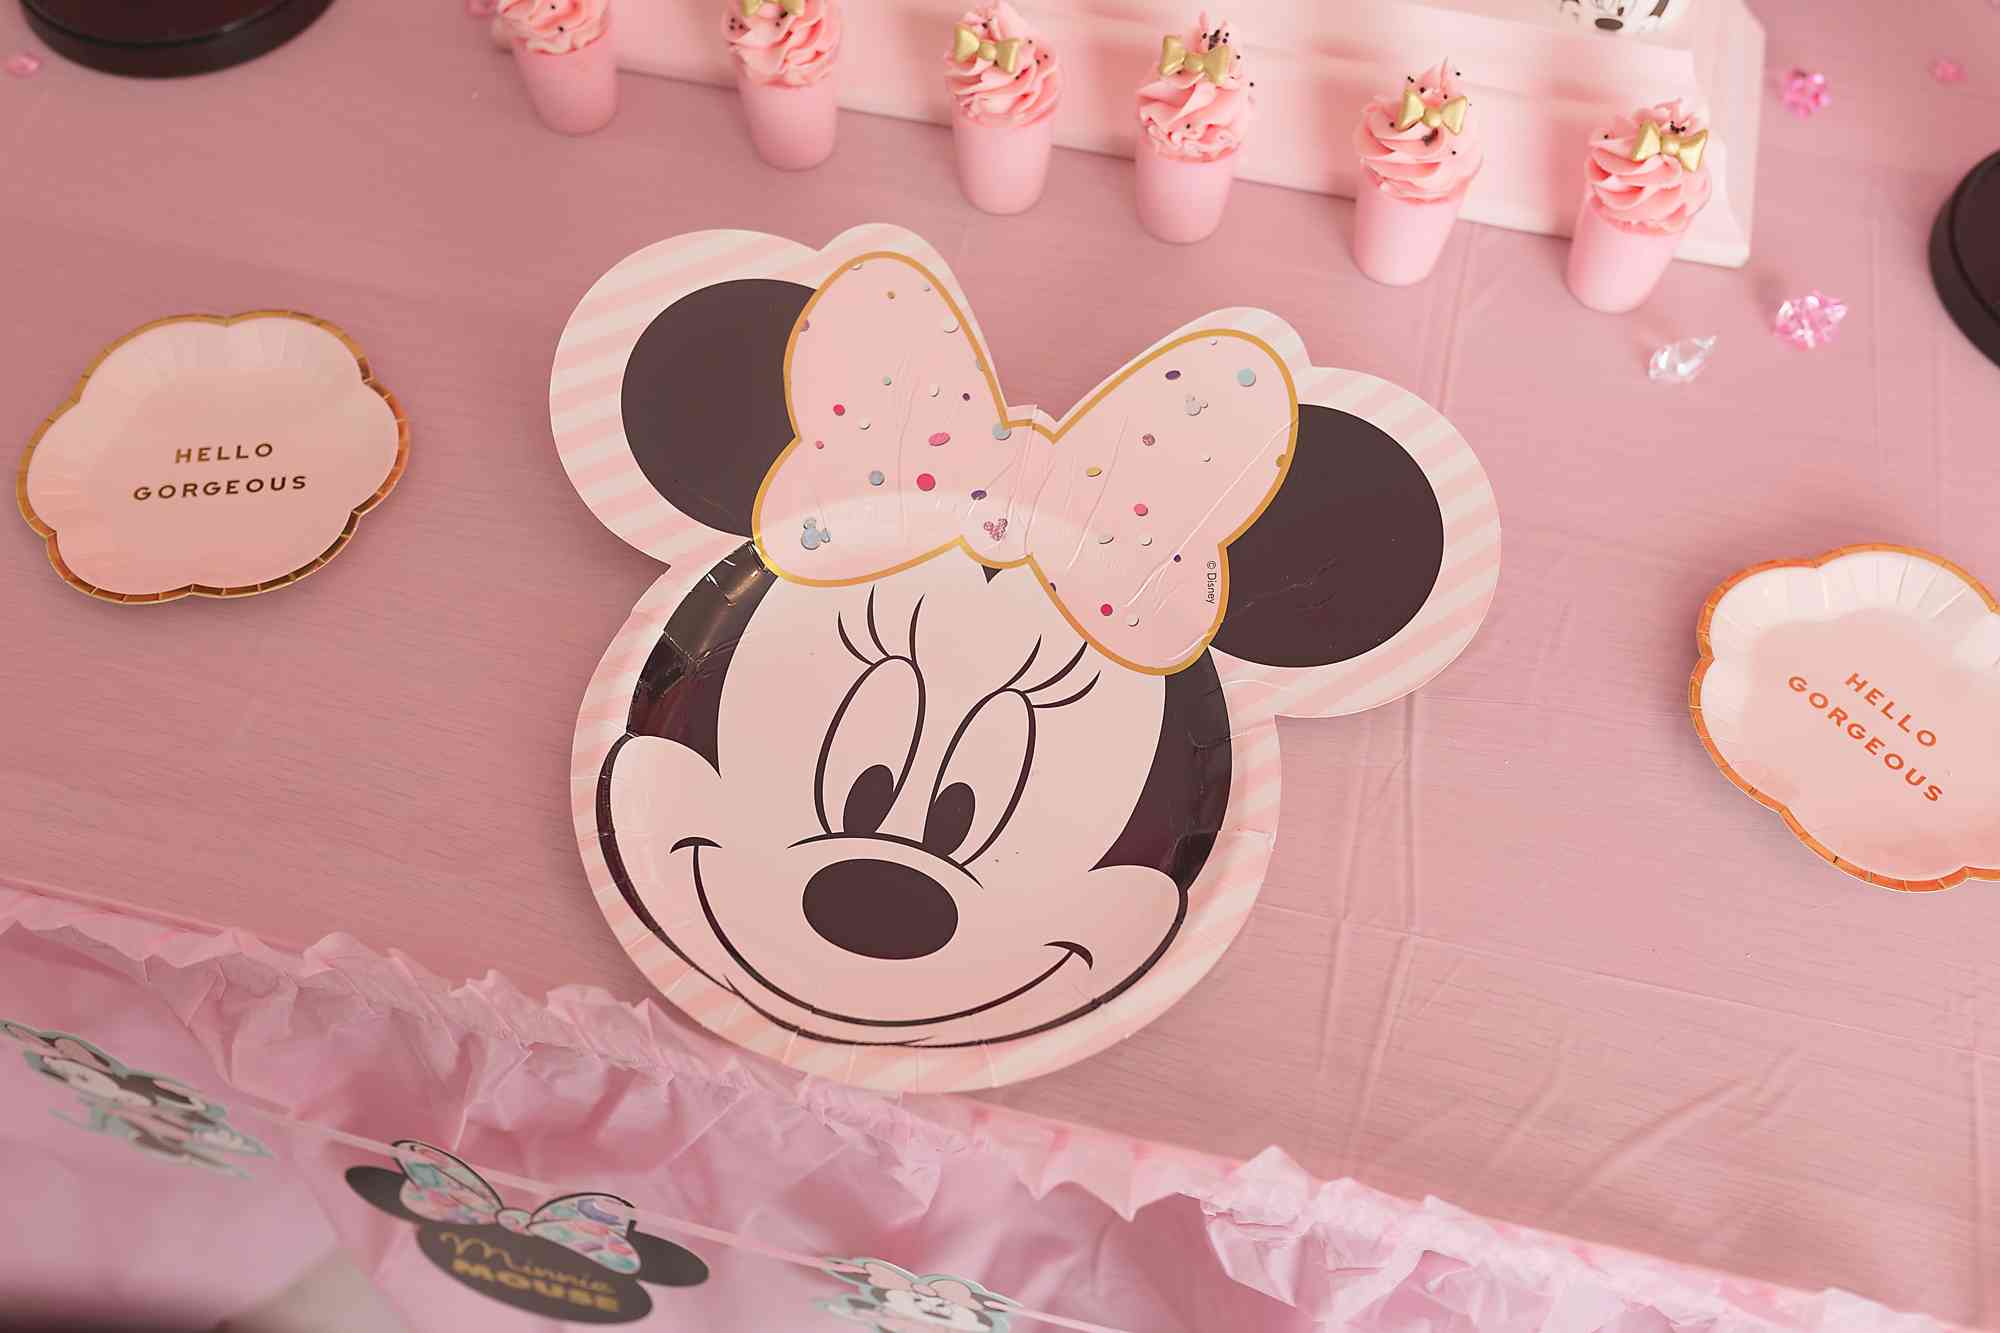 Anniversaire Theme Minnie Mouse Disney Pour Enfant Fille